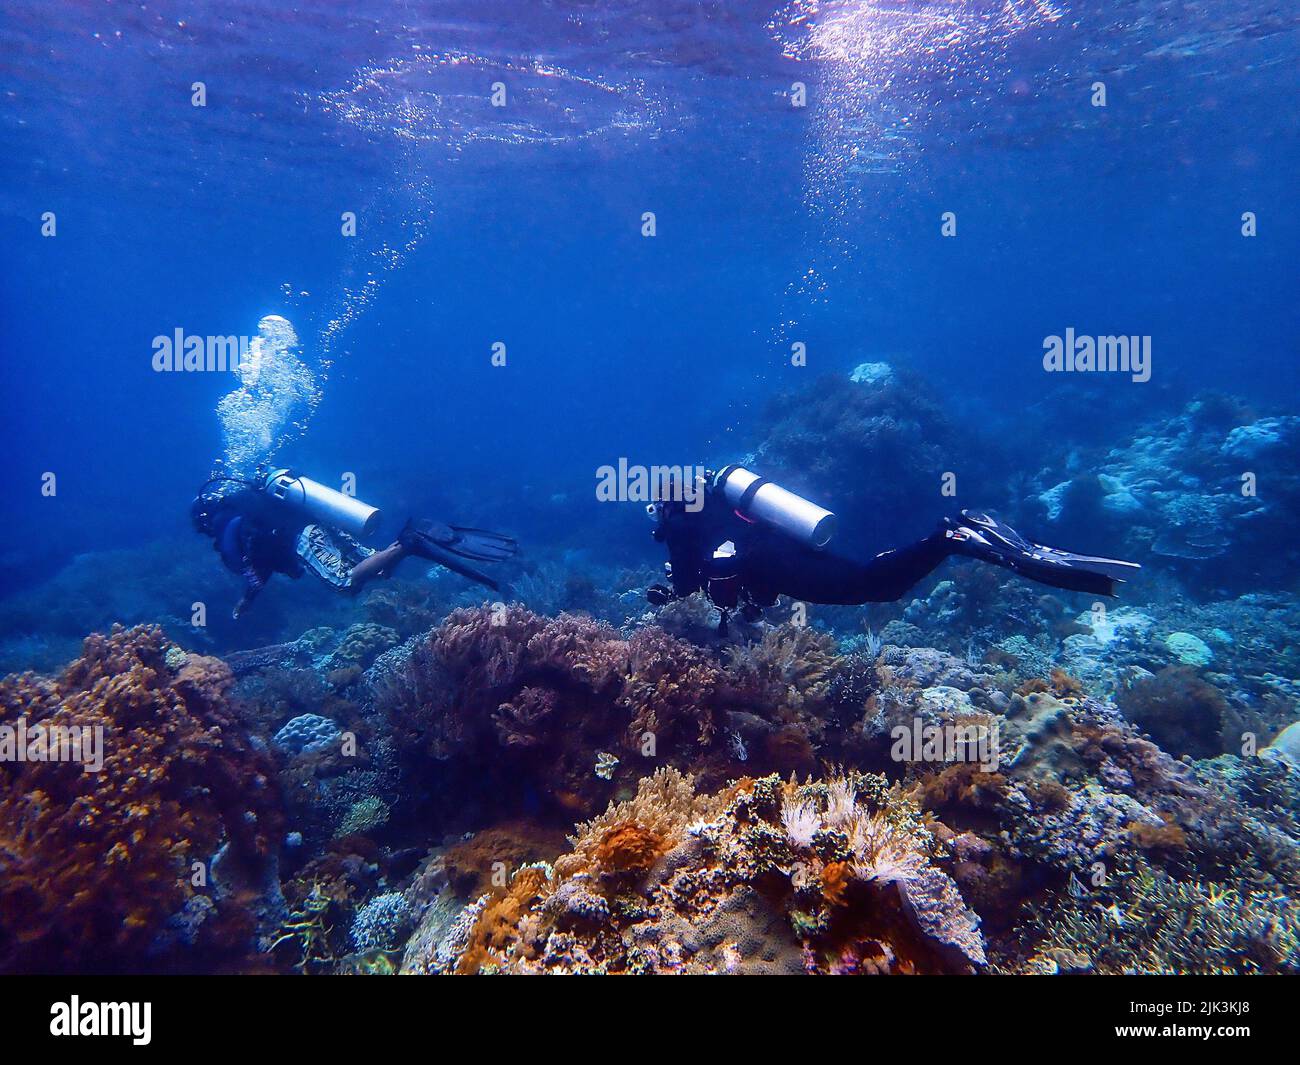 Indonesia Sumbawa - Scuba Diving Stock Photo - Alamy